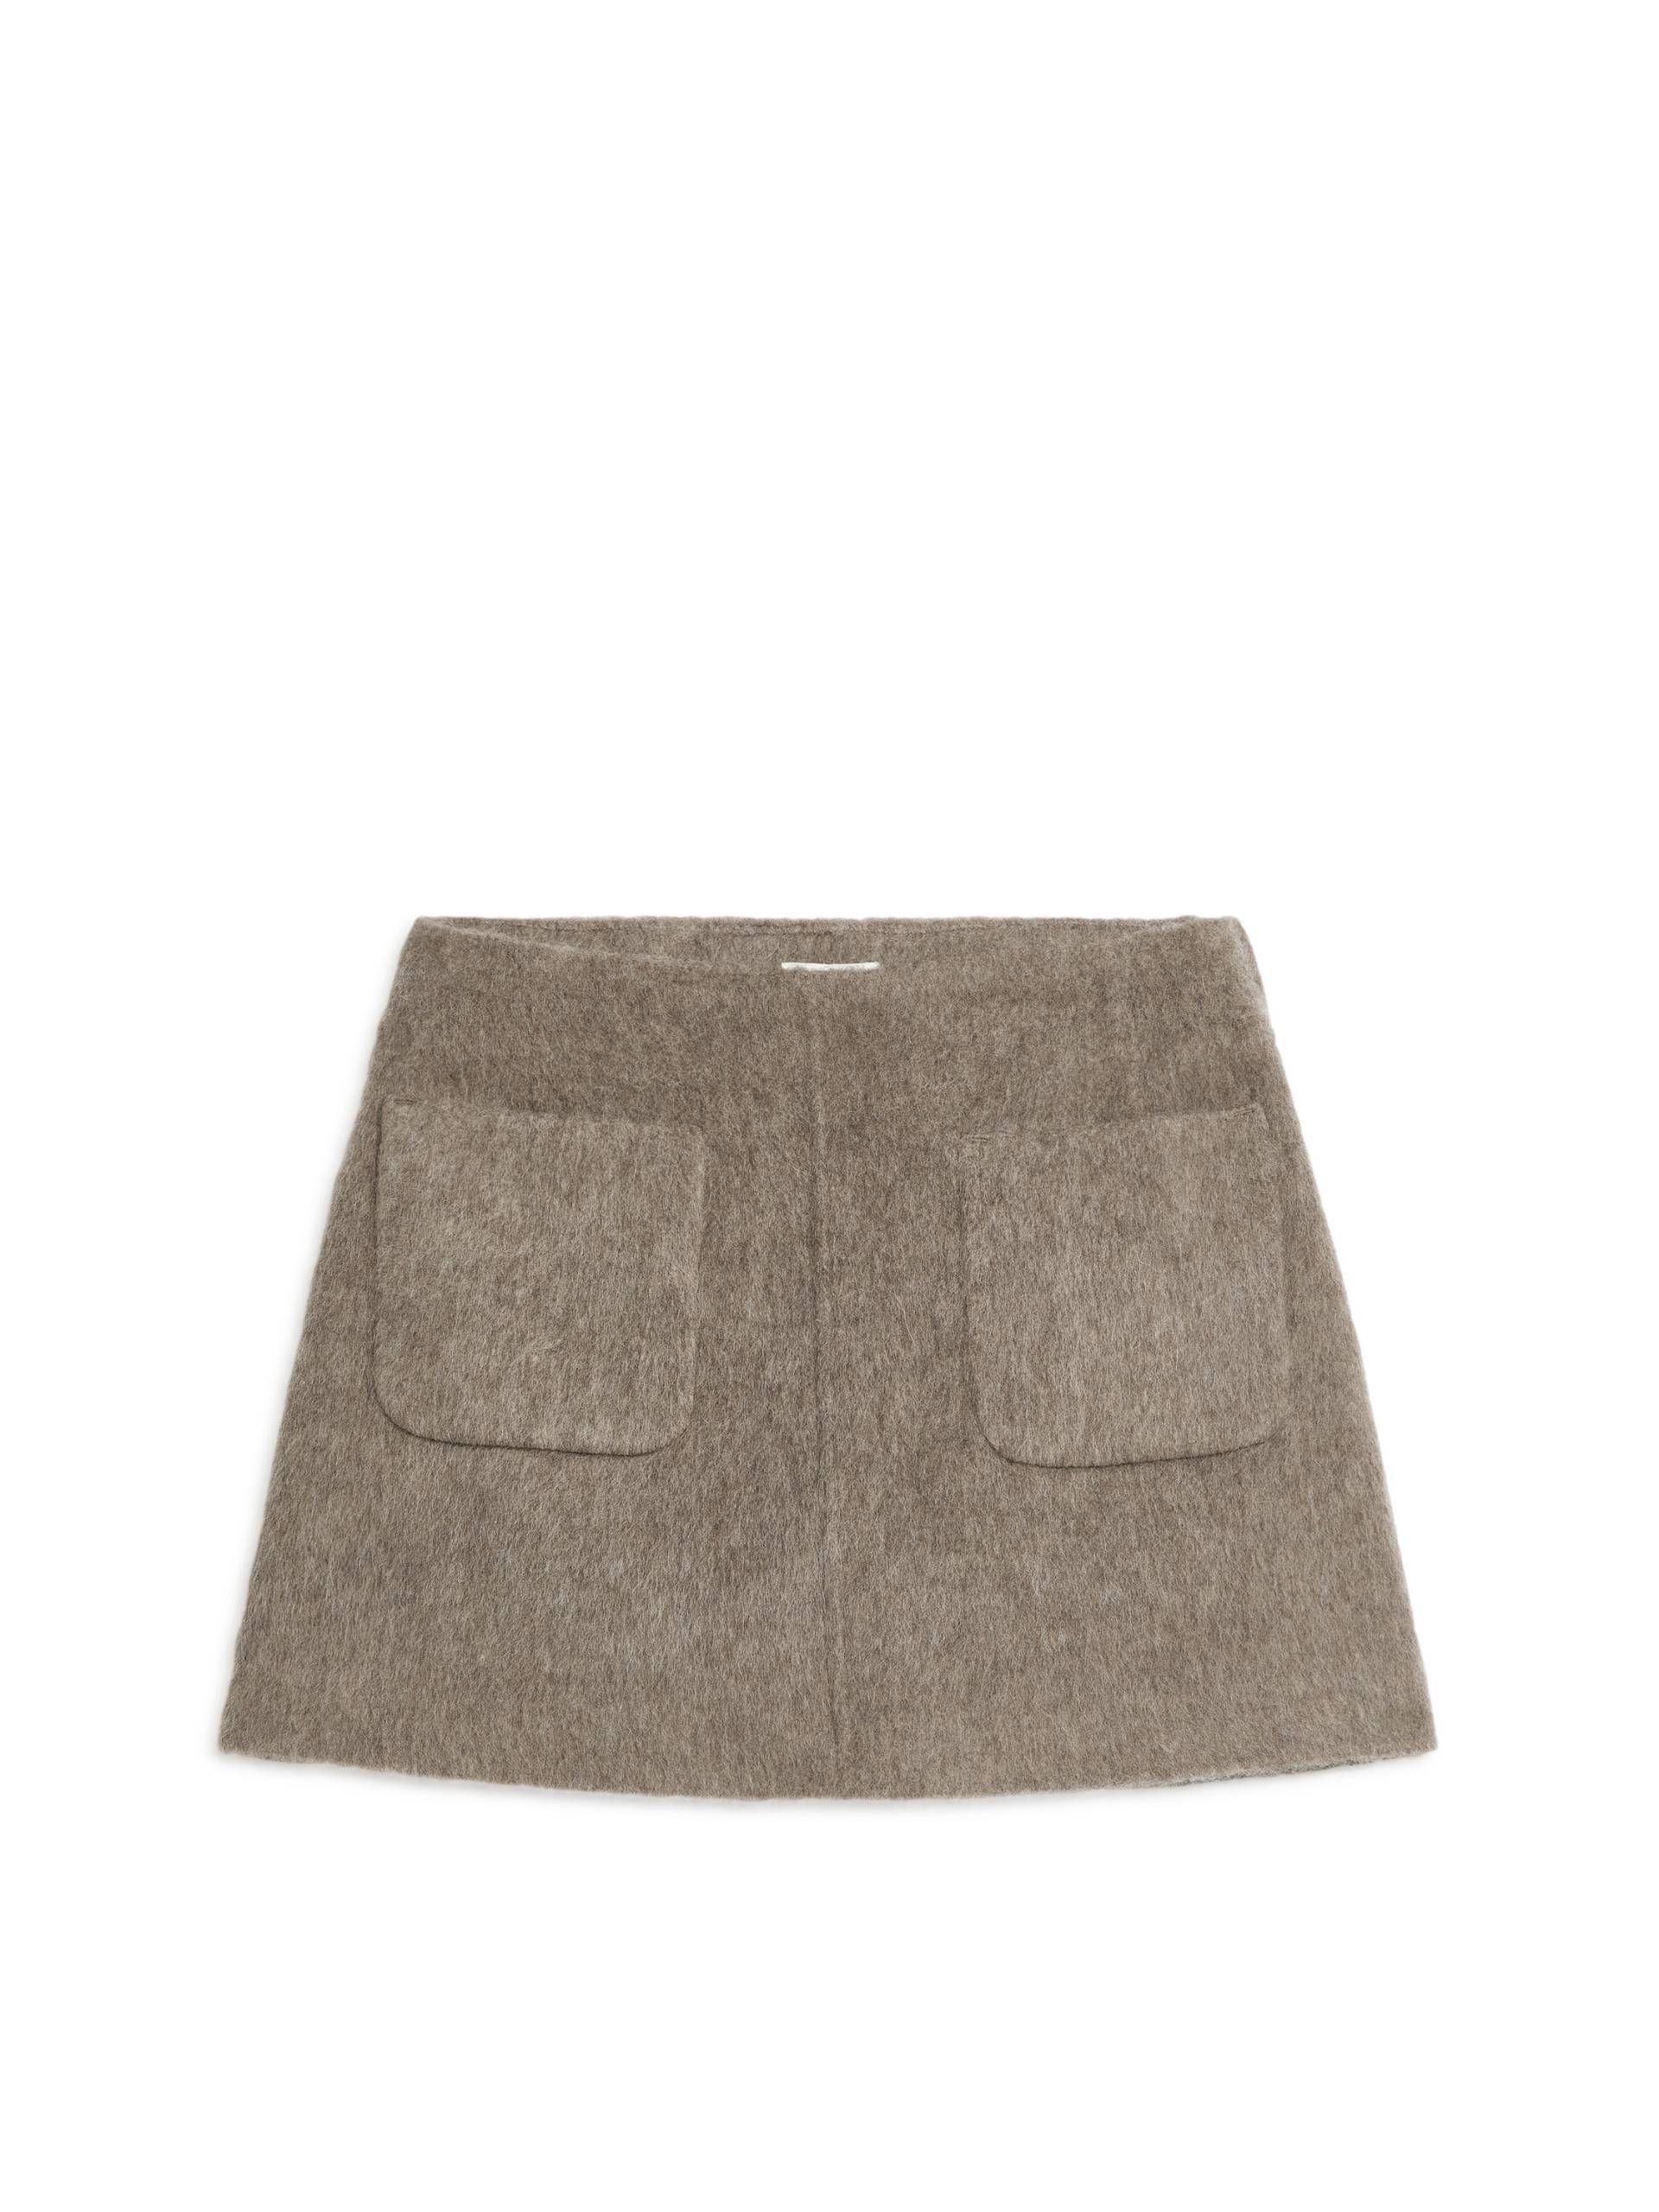 Arket Minirock aus Wolle Taupe, Röcke in Größe 42. Farbe: Mole von Arket